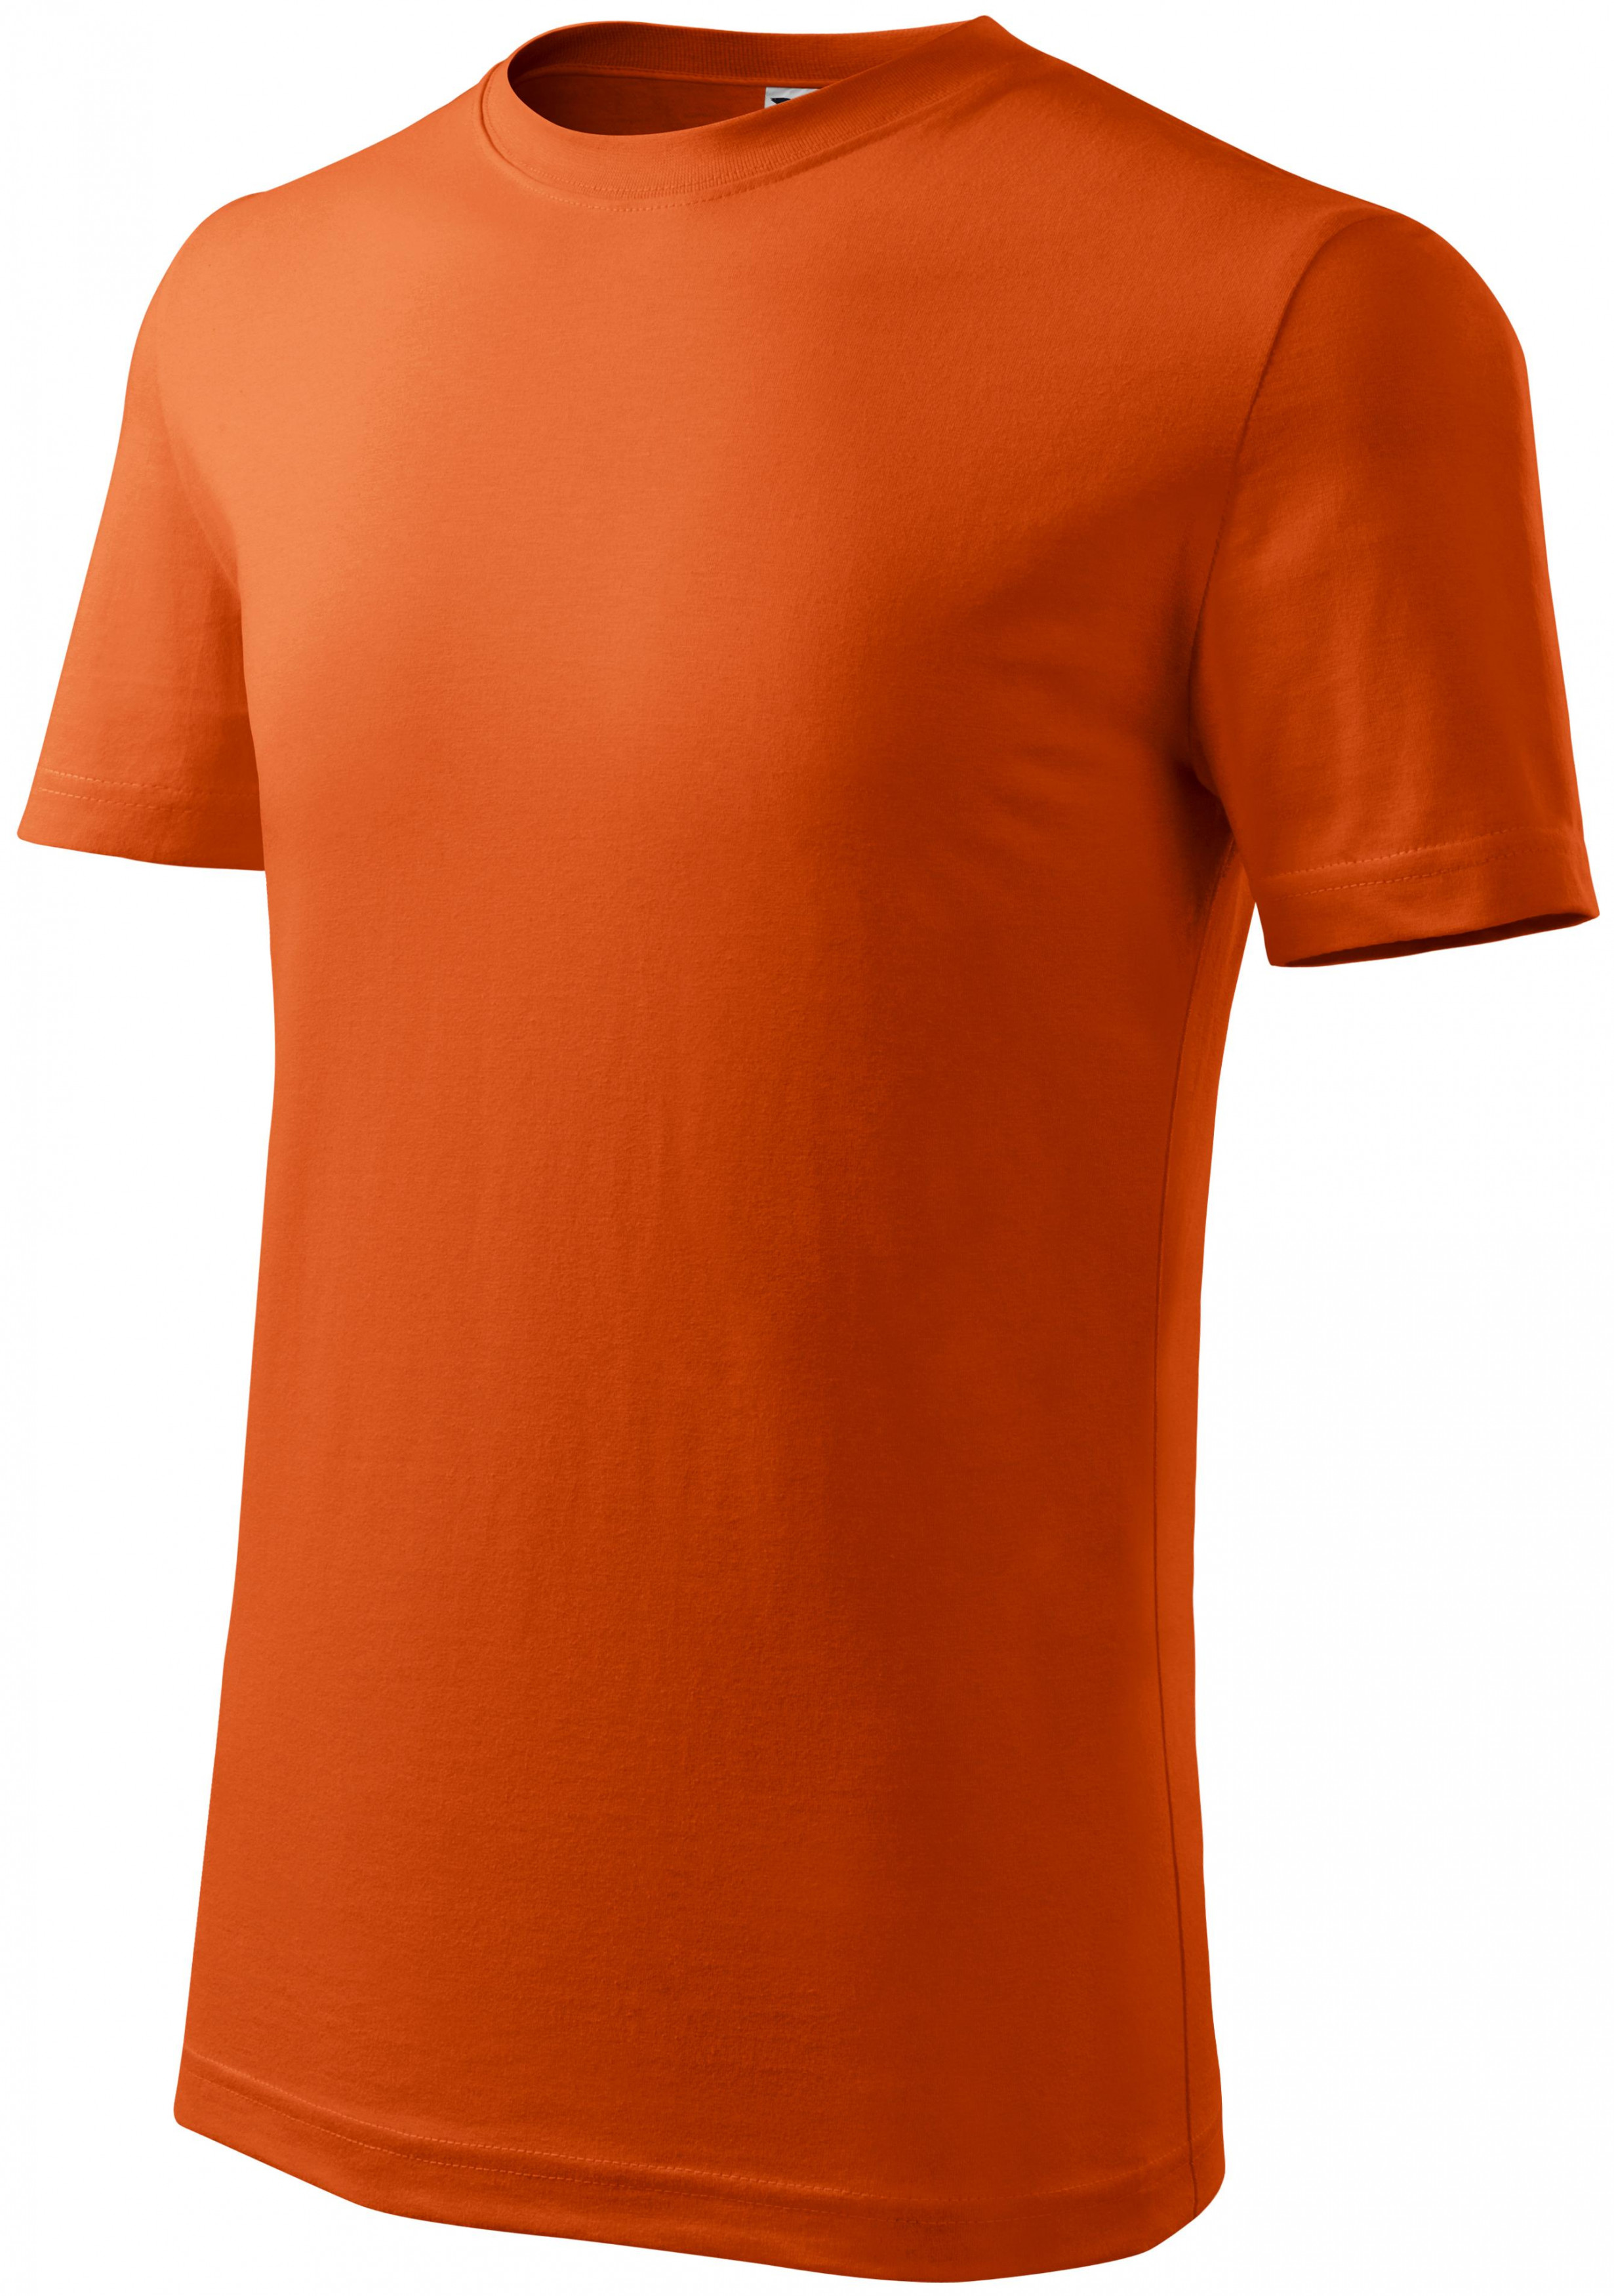 Detské tričko ľahšie, oranžová, 146cm / 10rokov